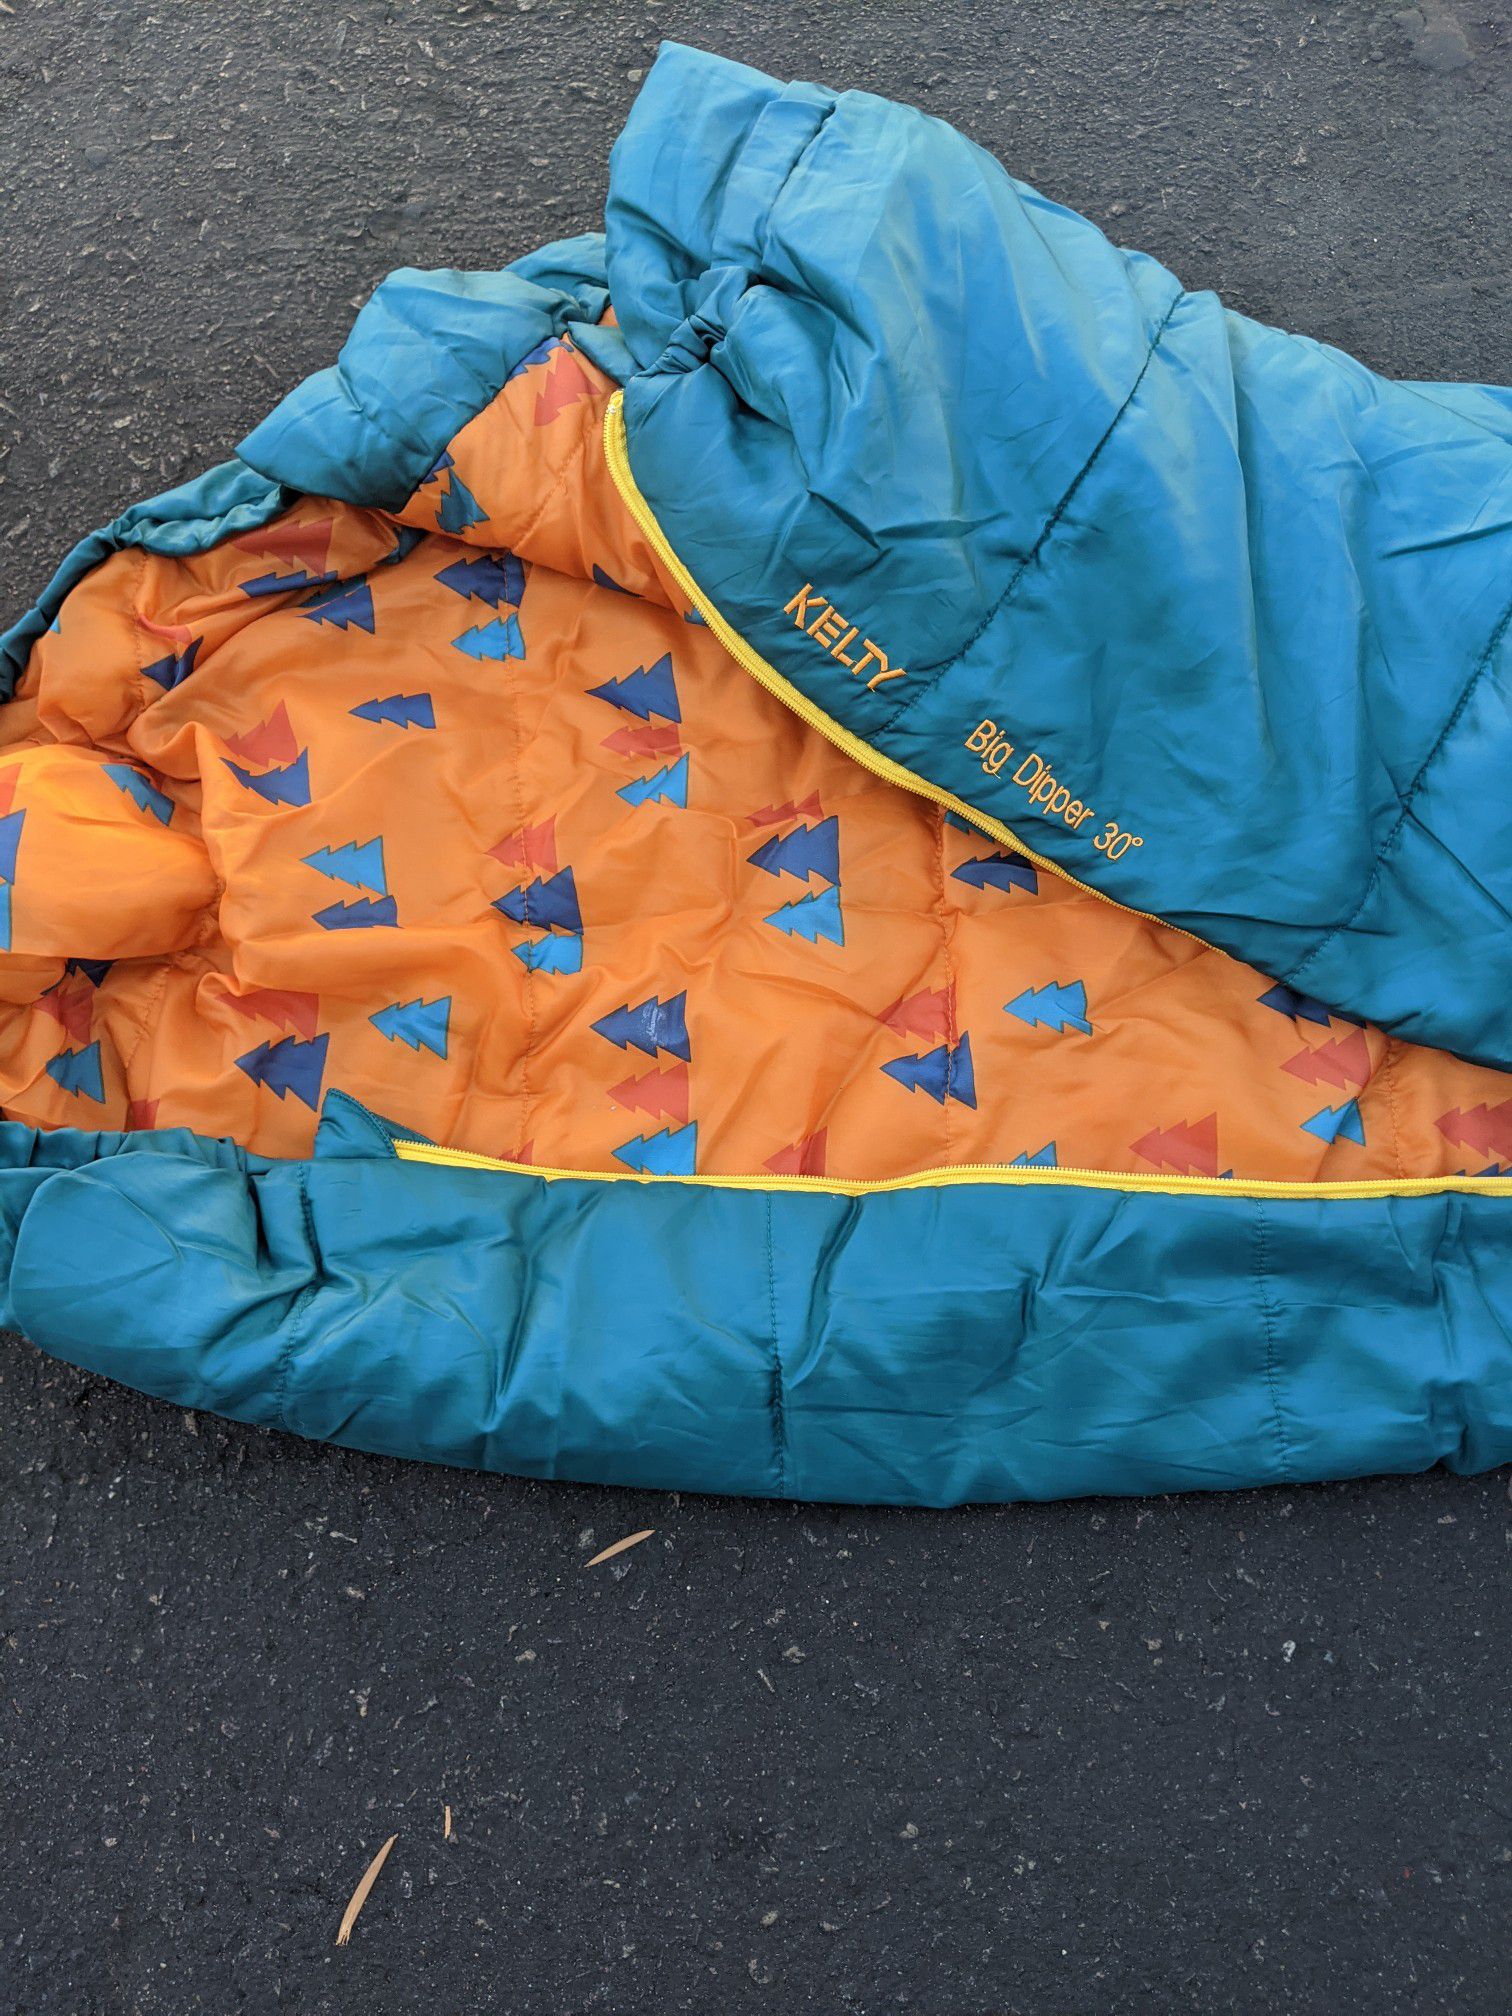 Kelty Big Dipper Youth's Sleeping bag